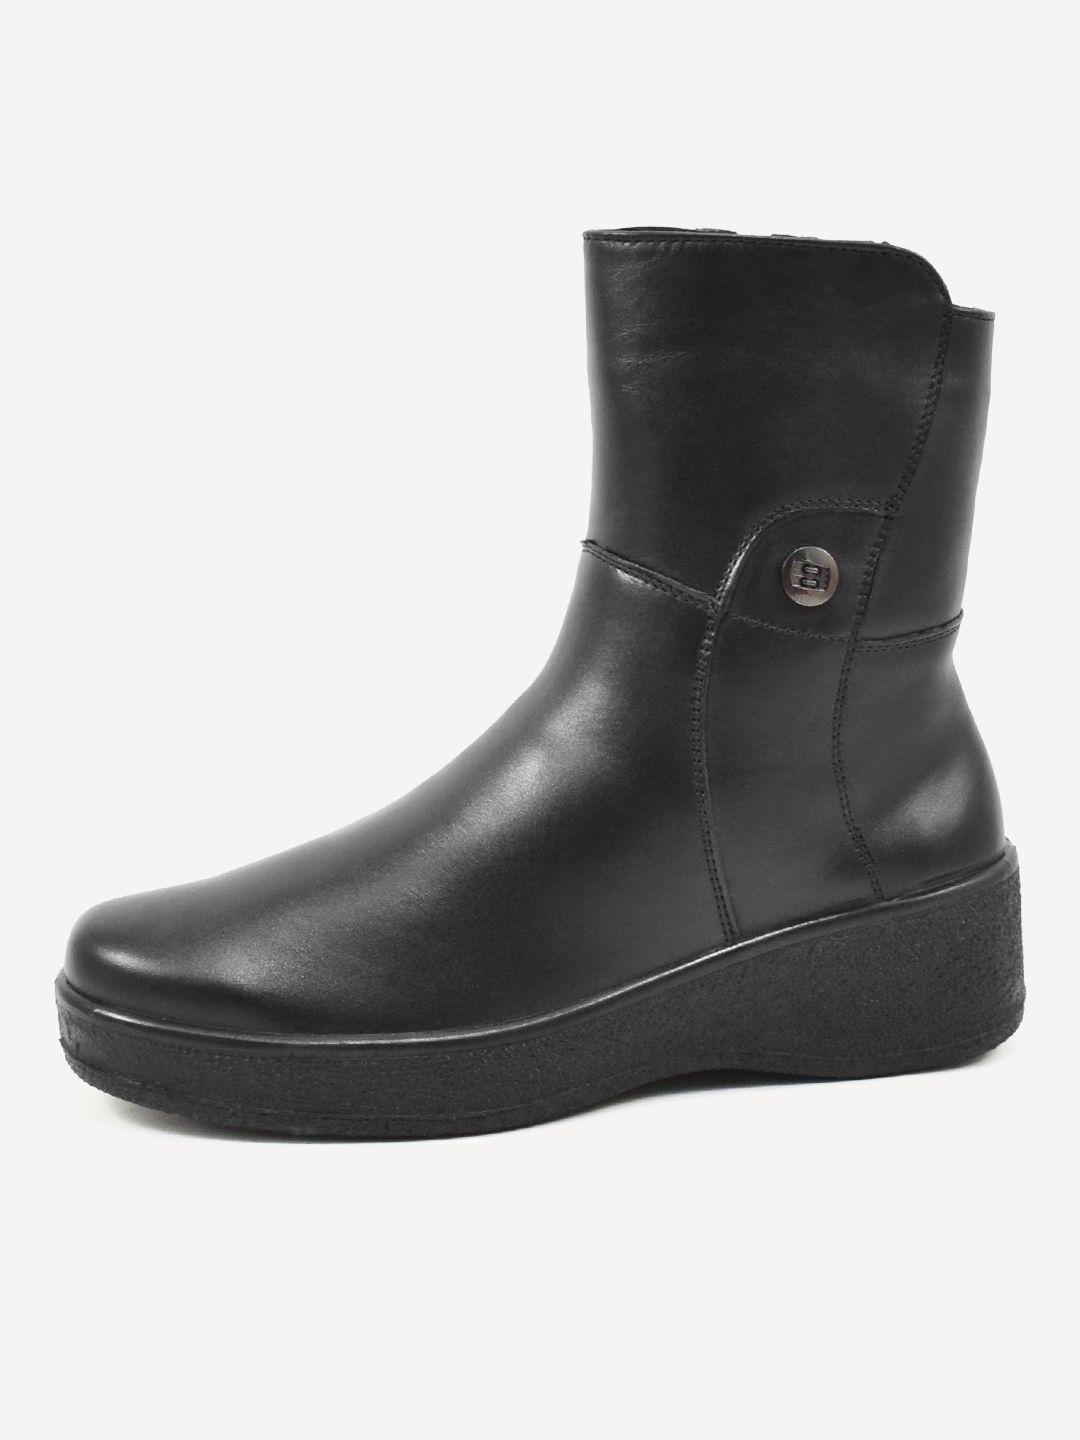 Полусапоги женские Melitta Shoes 5581/3 черные 41 RU